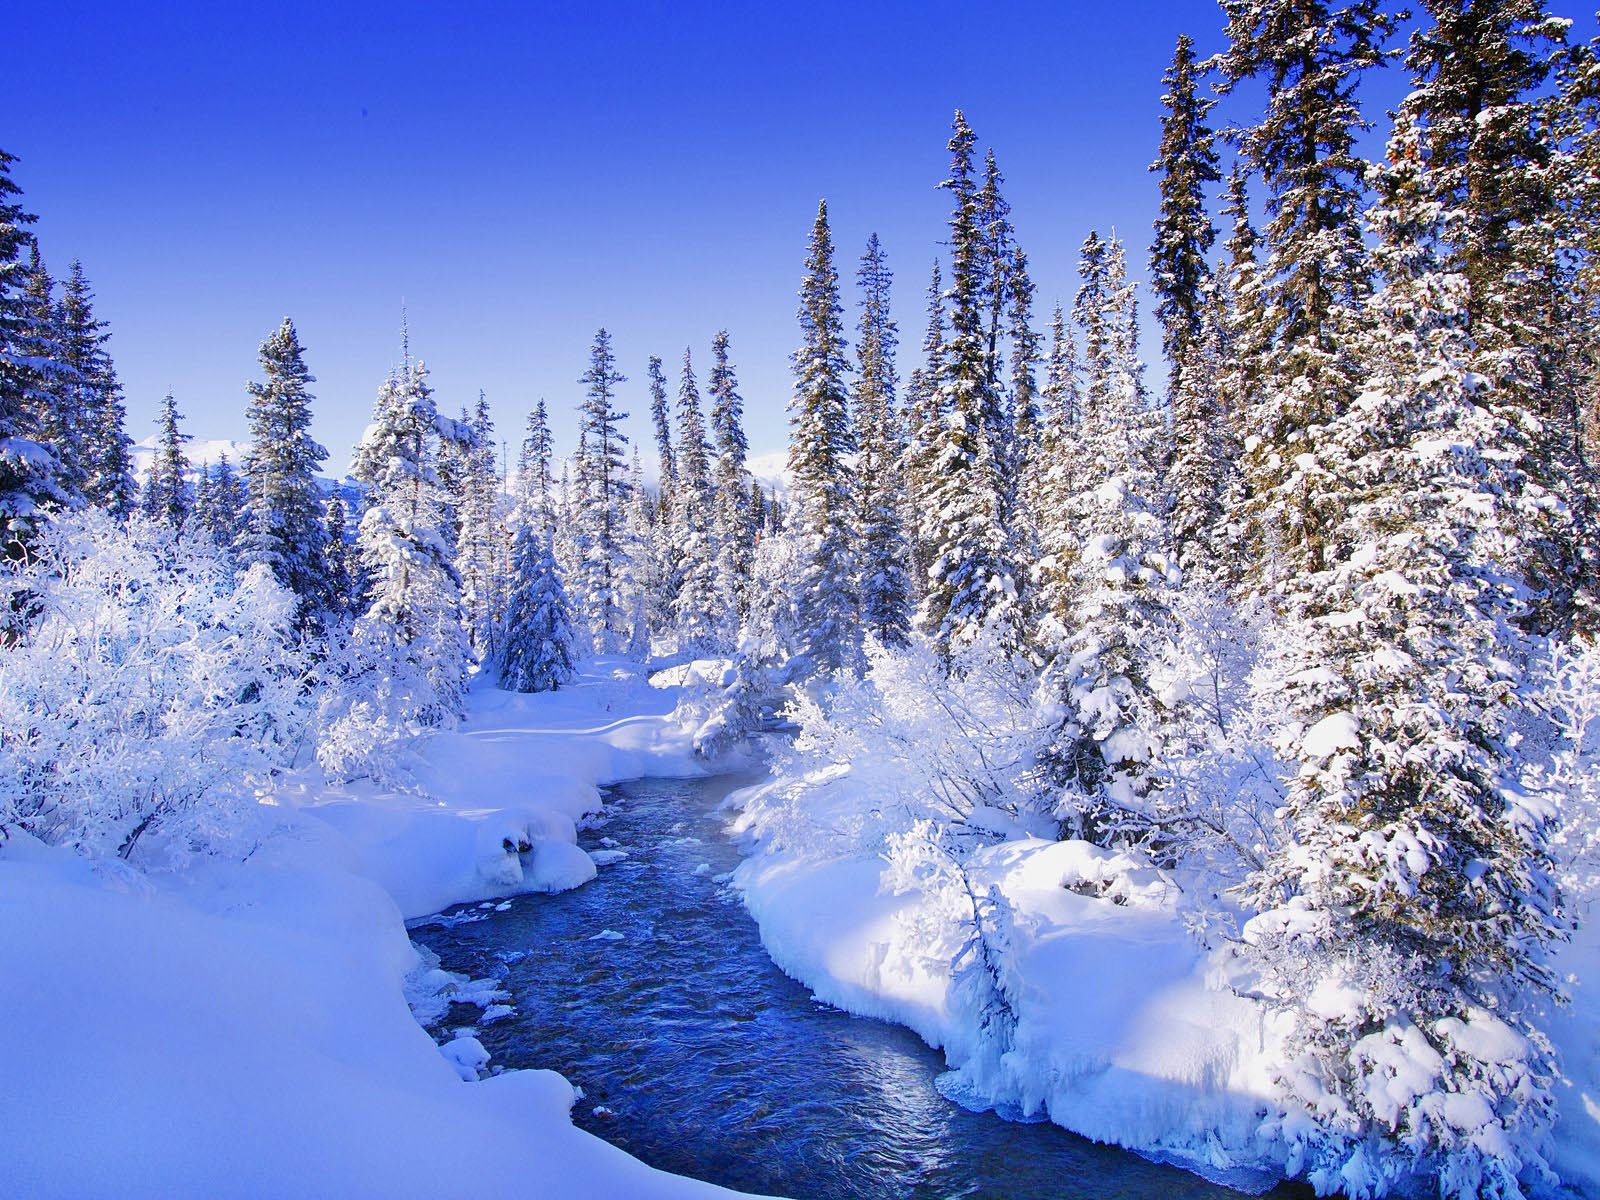 Hình nền tuyết phong cảnh: Bạn yêu thích thiên nhiên và danh thắng? Bạn muốn trang trí màn hình thiết bị của mình với những hình nền tuyết phong cảnh đẹp tuyệt vời? Đừng bỏ lỡ những hình ảnh tuyệt đẹp mà chúng tôi cung cấp cho bạn!